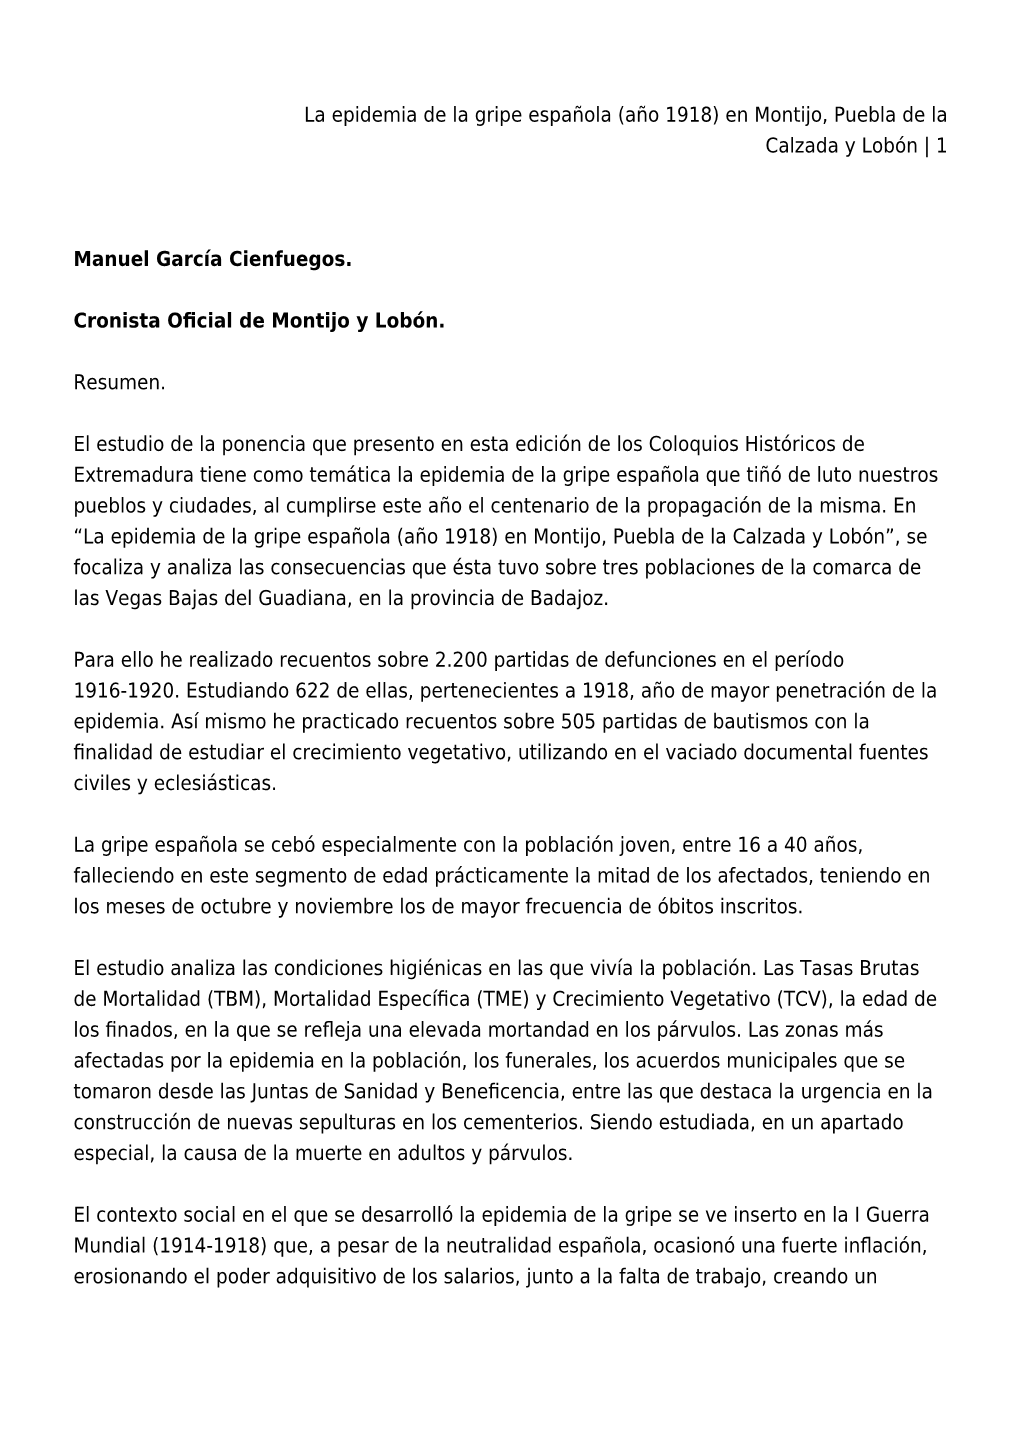 La Epidemia De La Gripe Española (Año 1918) En Montijo, Puebla De La Calzada Y Lobón | 1